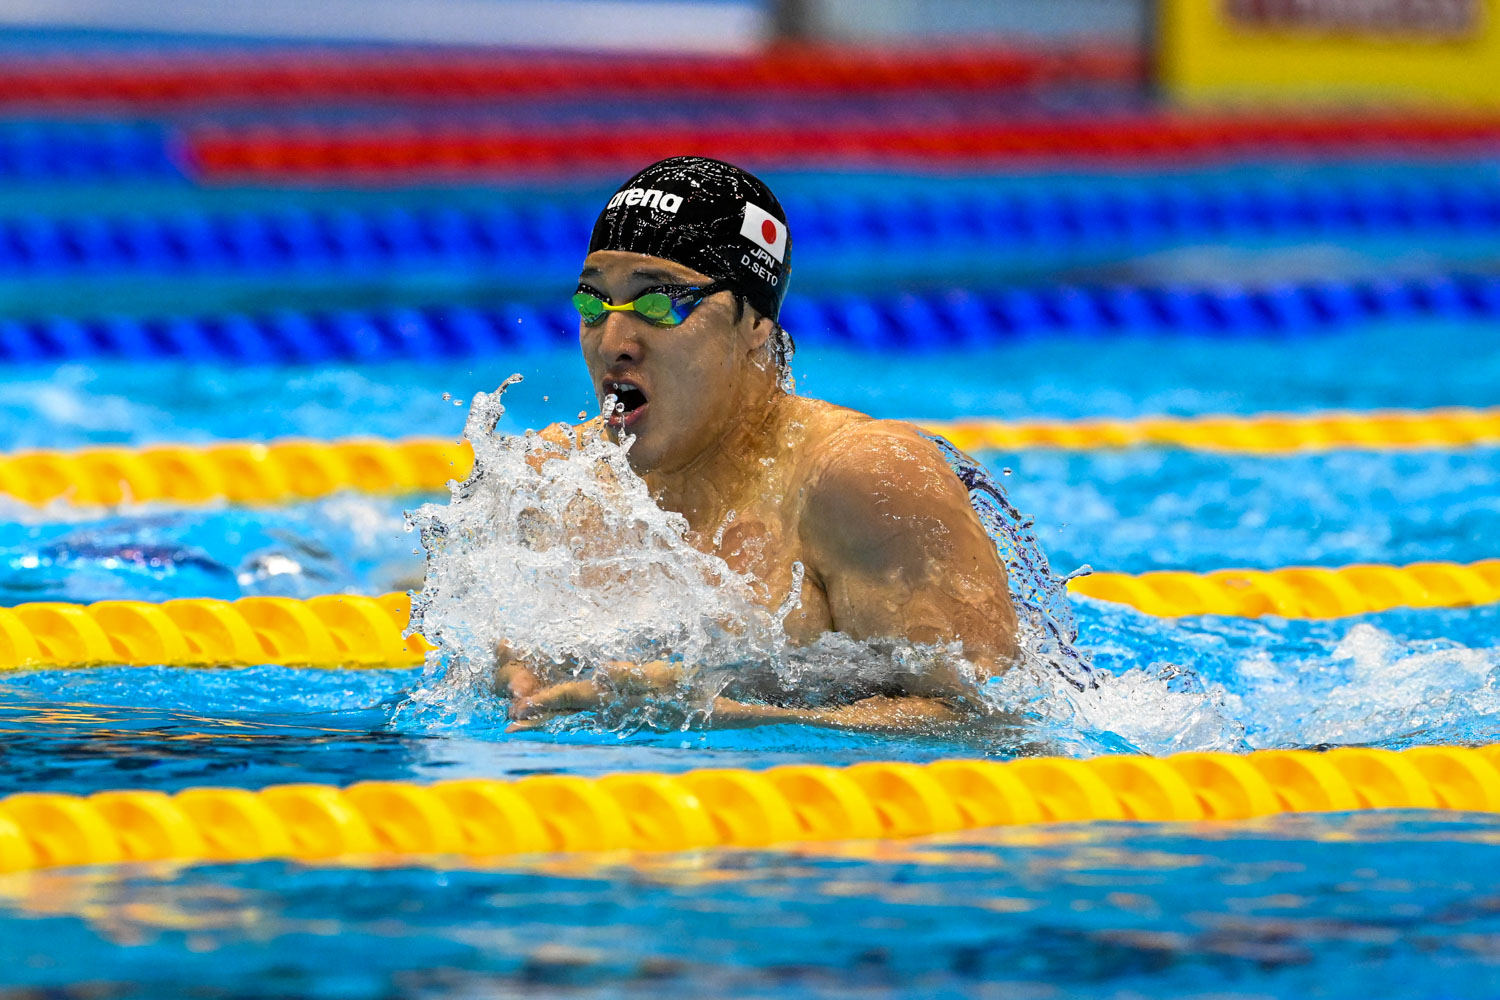 日本のドーハ出場選手は12人と少し少ないが、オリンピック系主予選に影響を及ぼす